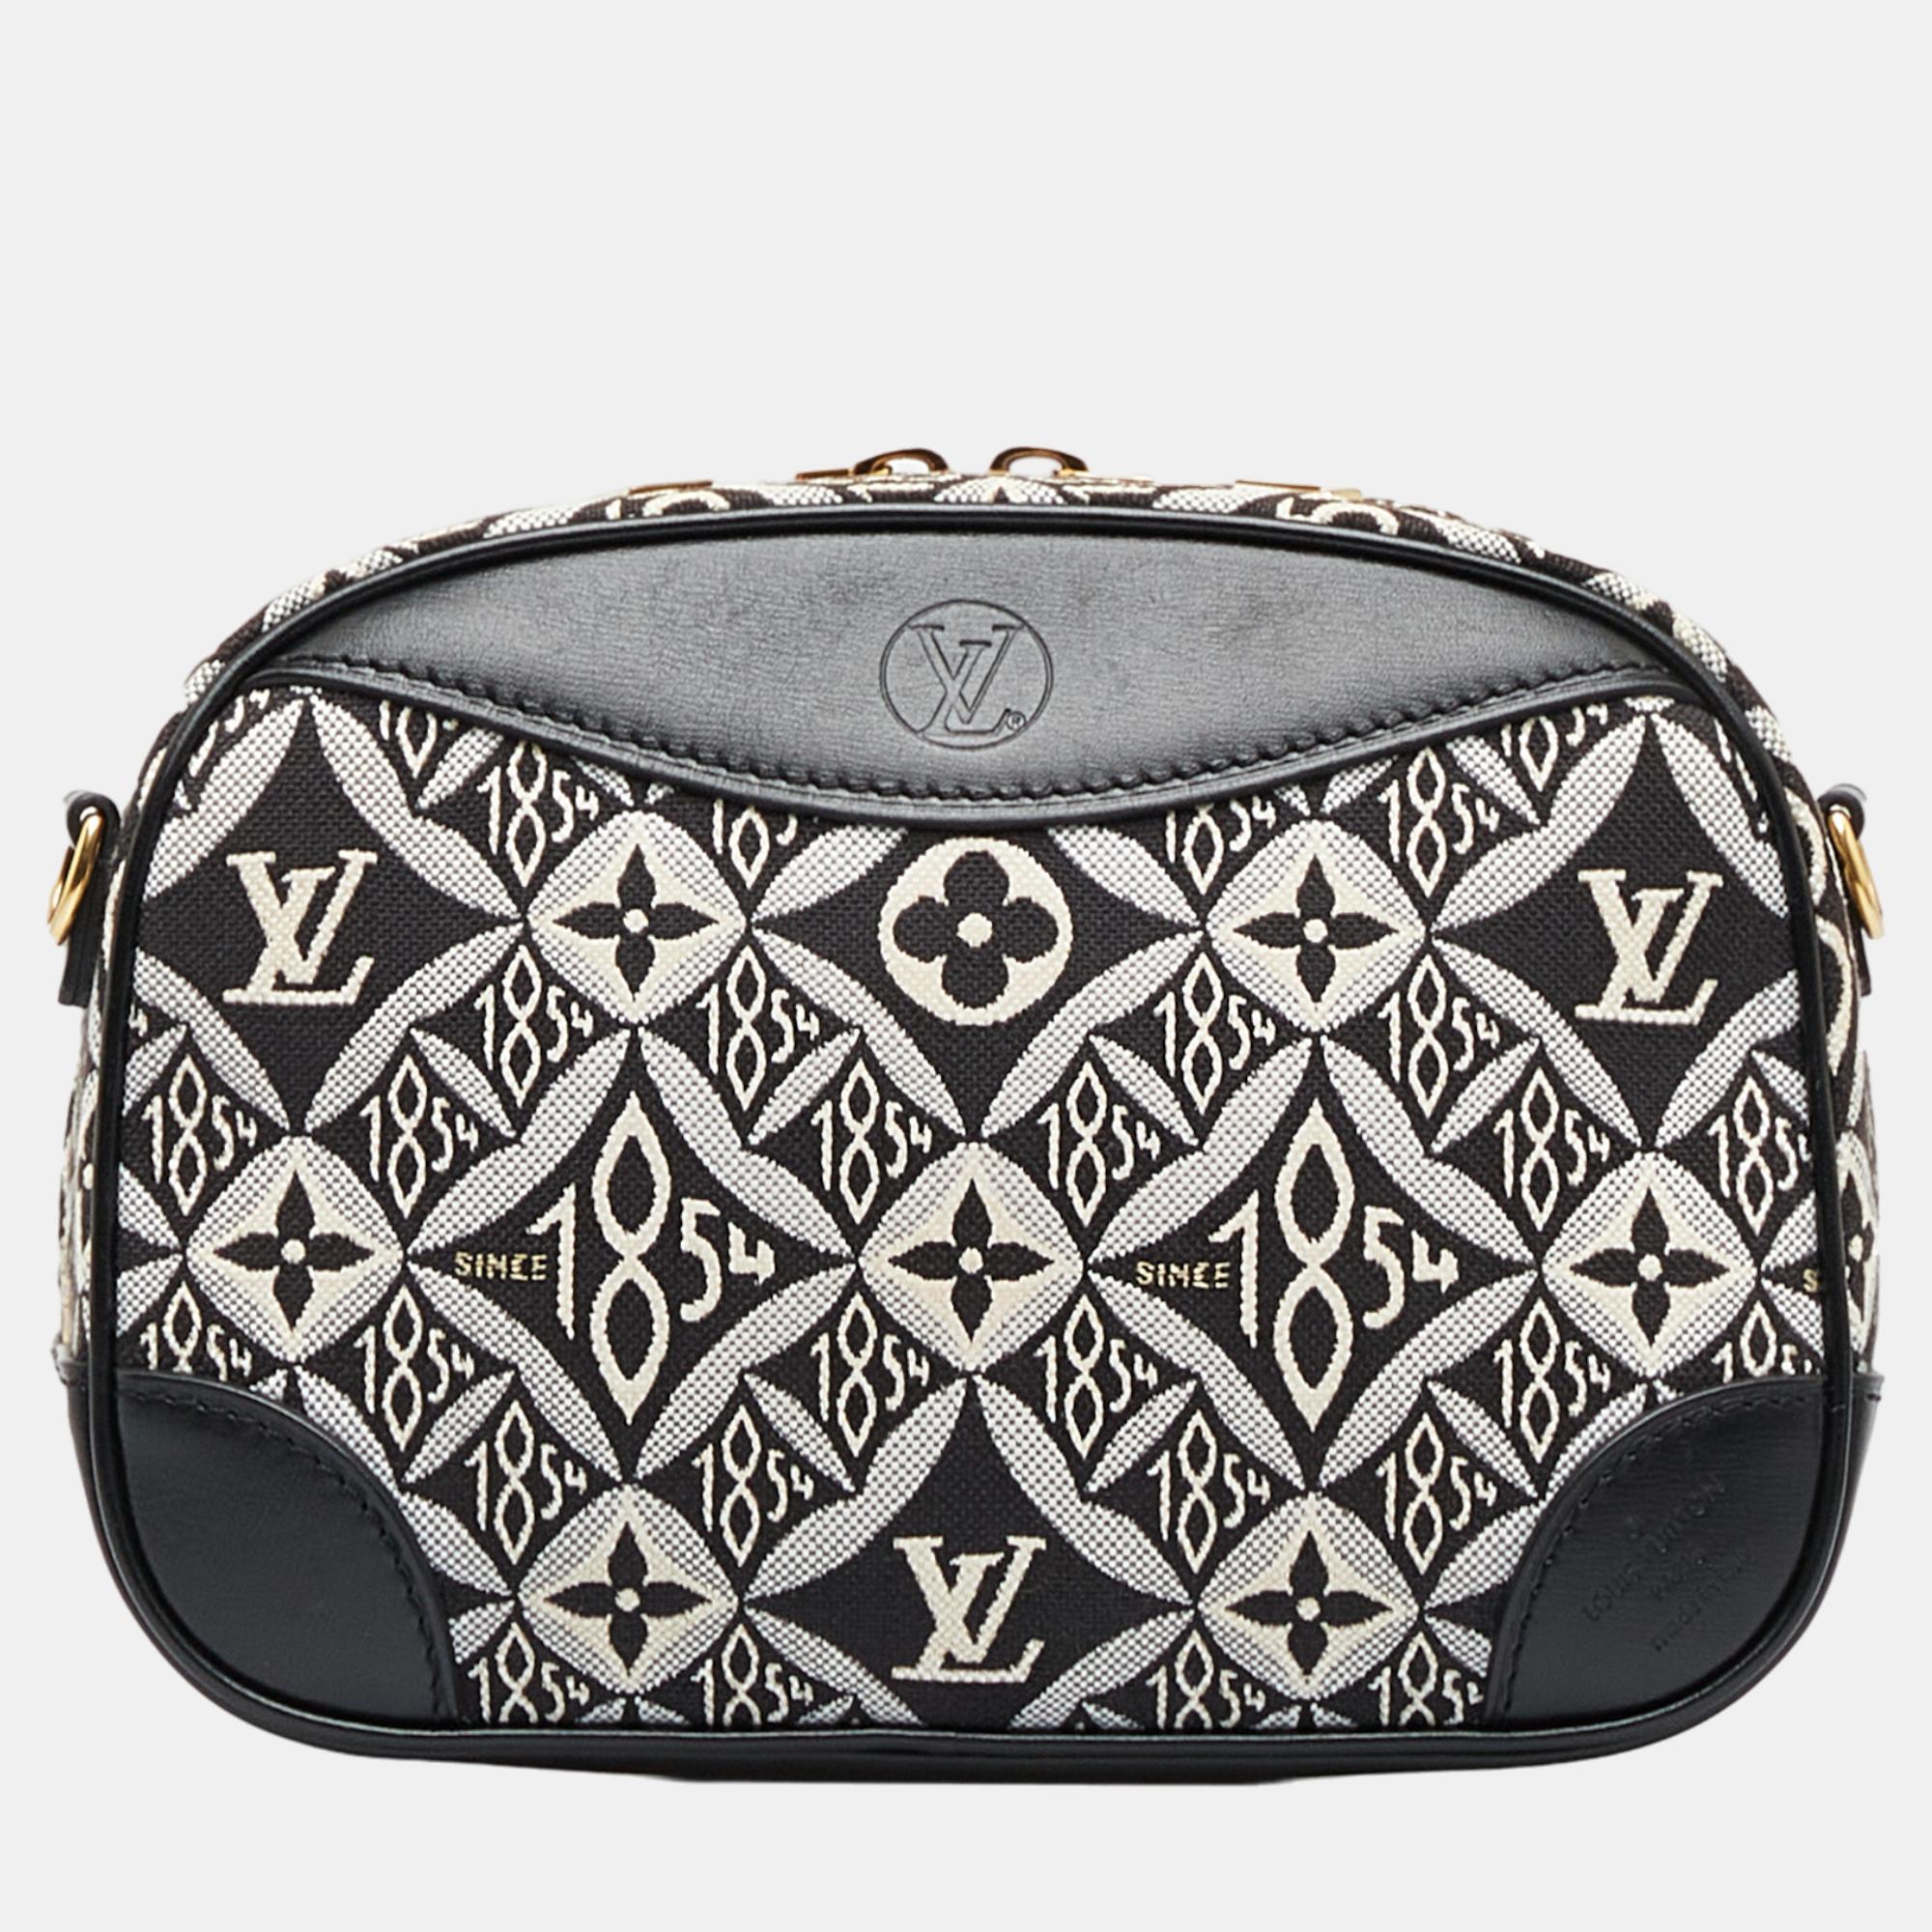 Louis Vuitton Black Since 1854 Deauville Mini Bag